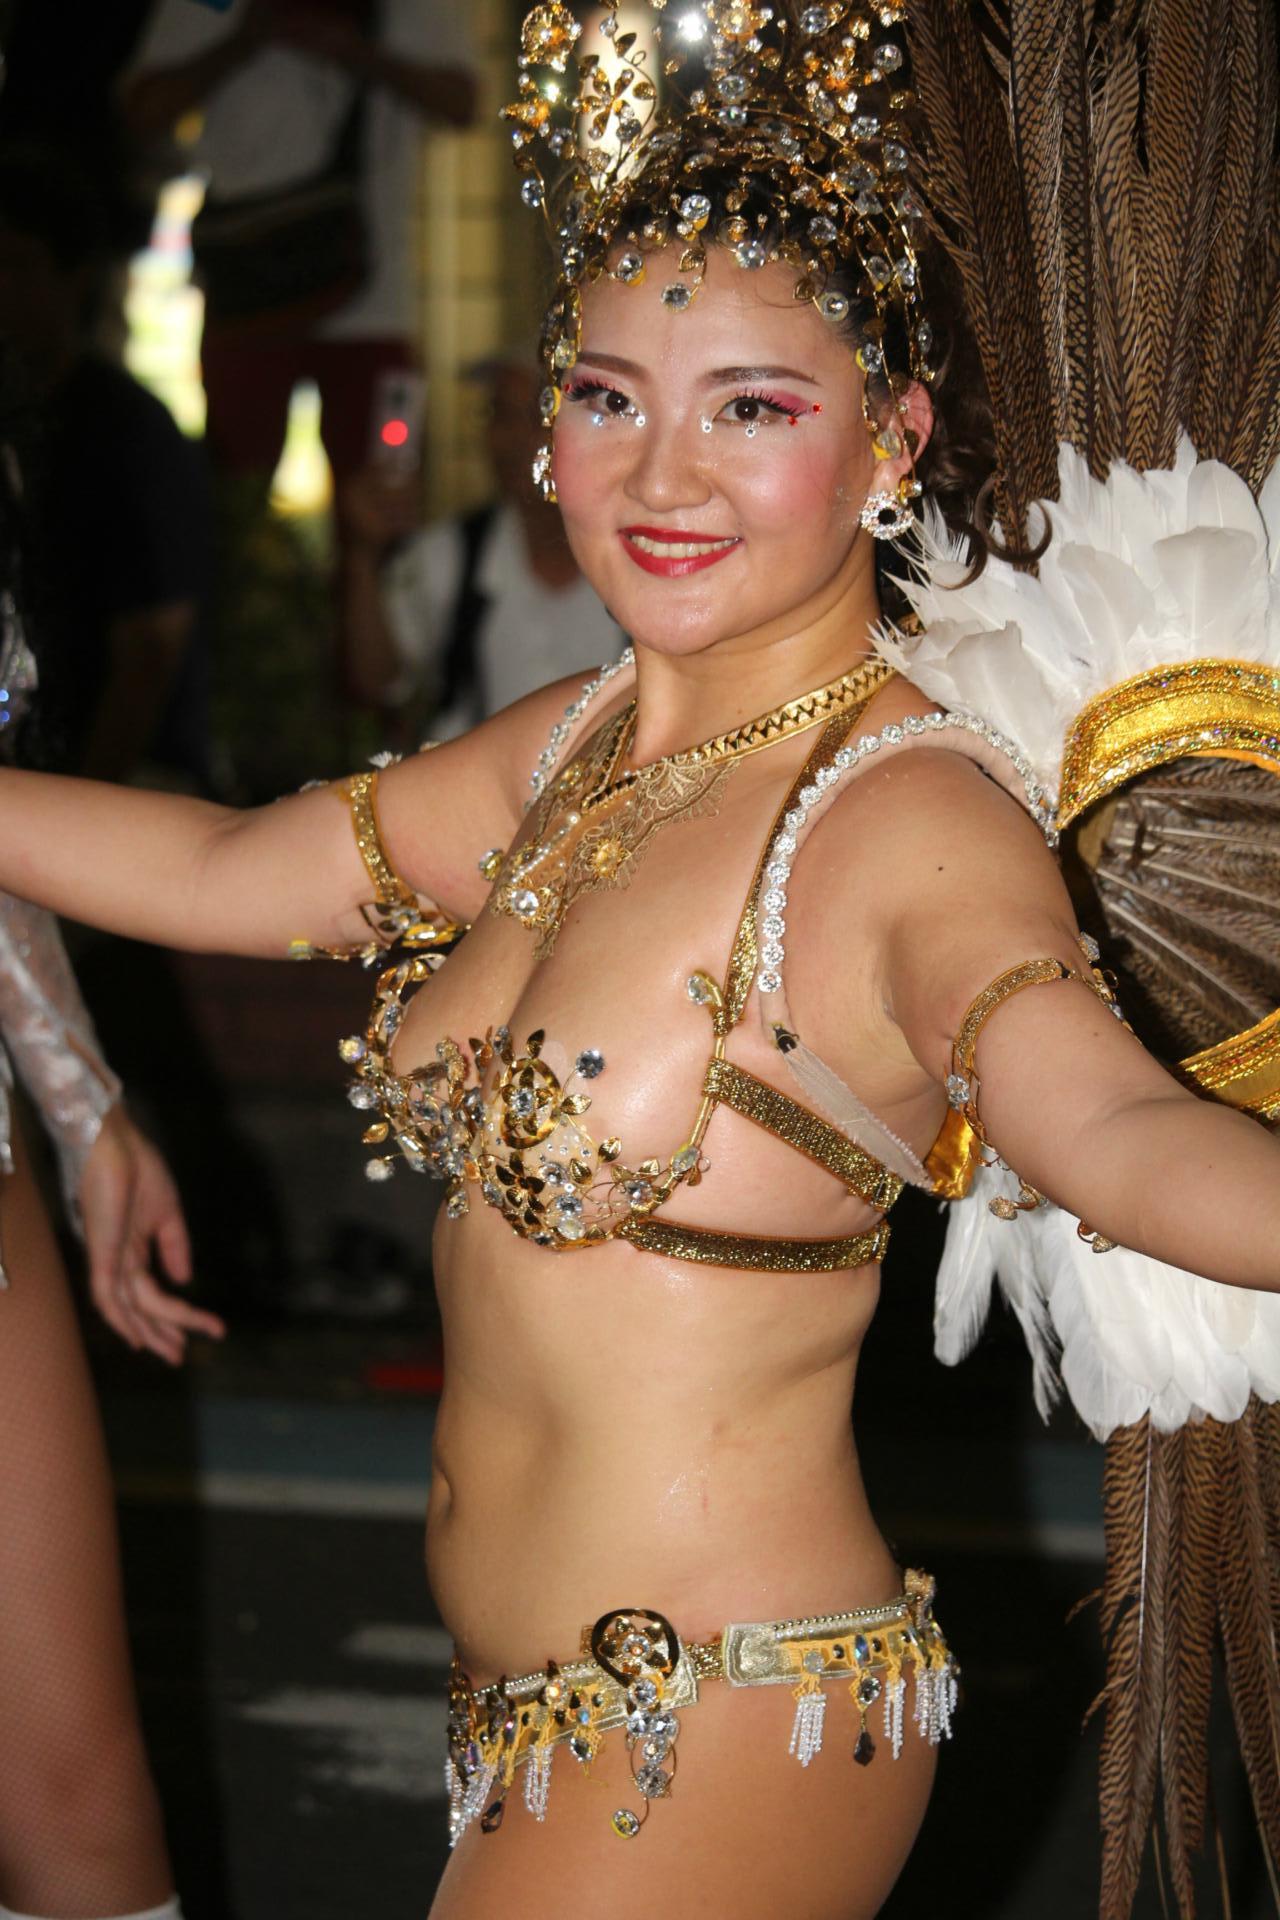 サンバ 過激 リオのカーニバル セクシー衣装のダンサー - ブラジル 写真3枚 ...